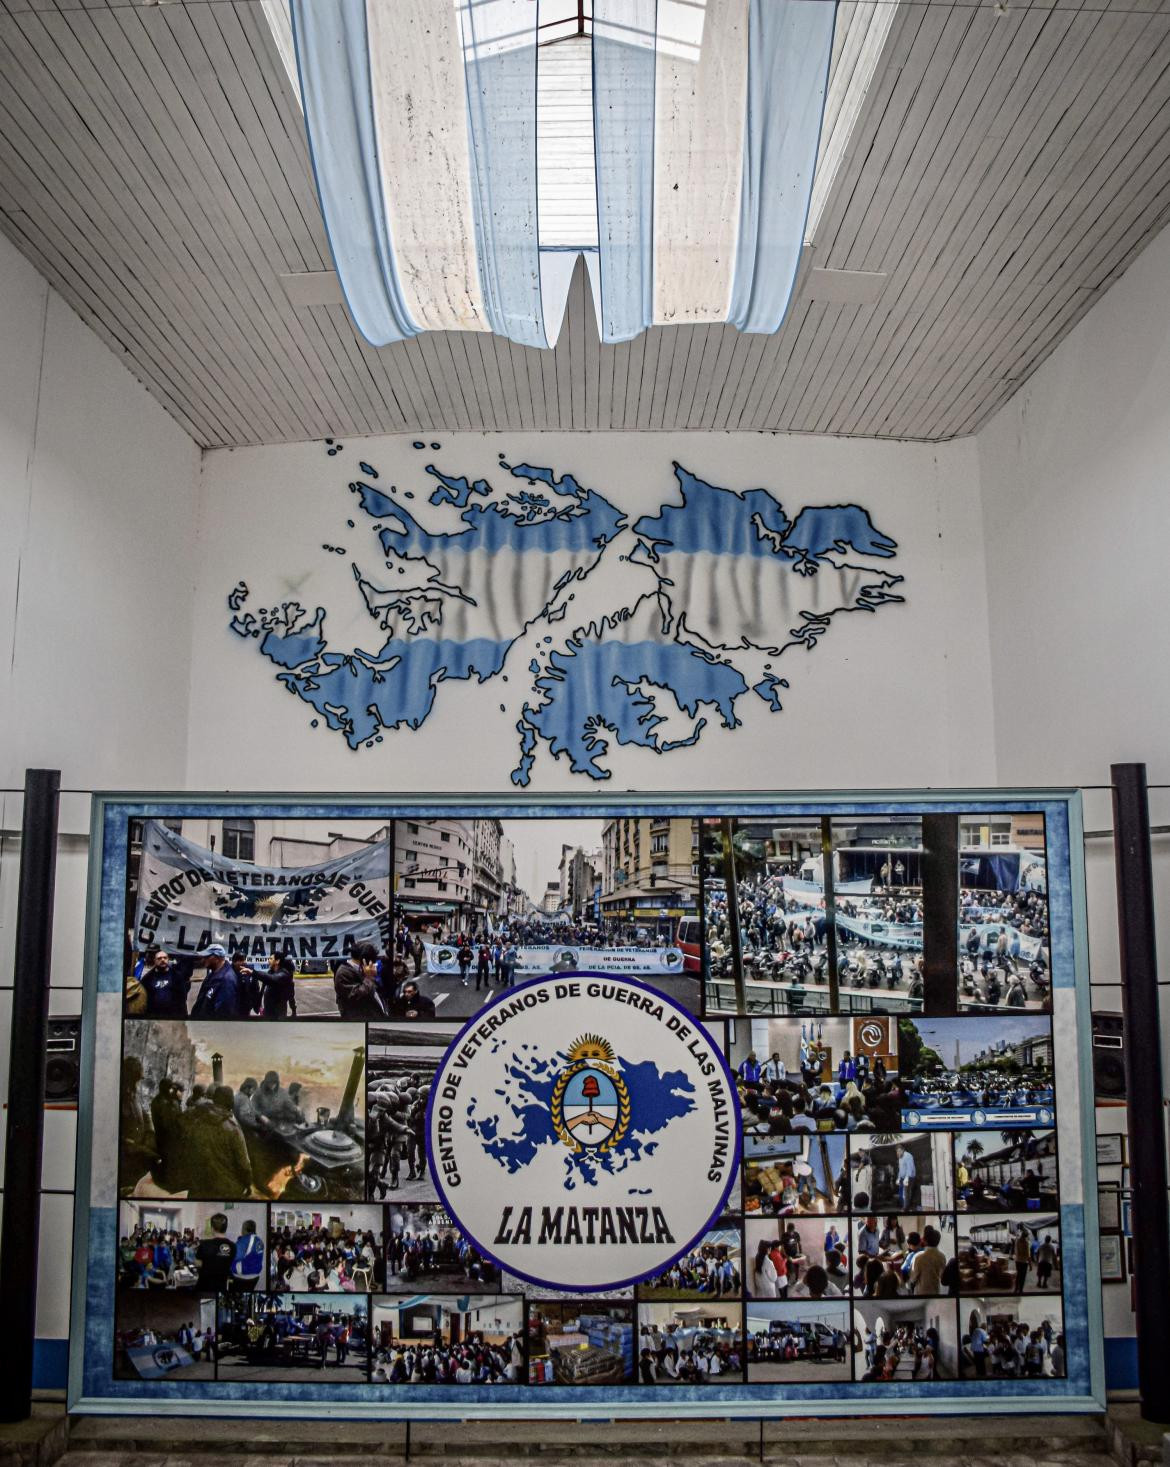 Centro de veteranos de guerra de Malvinas de La Matanza, 2 de abril